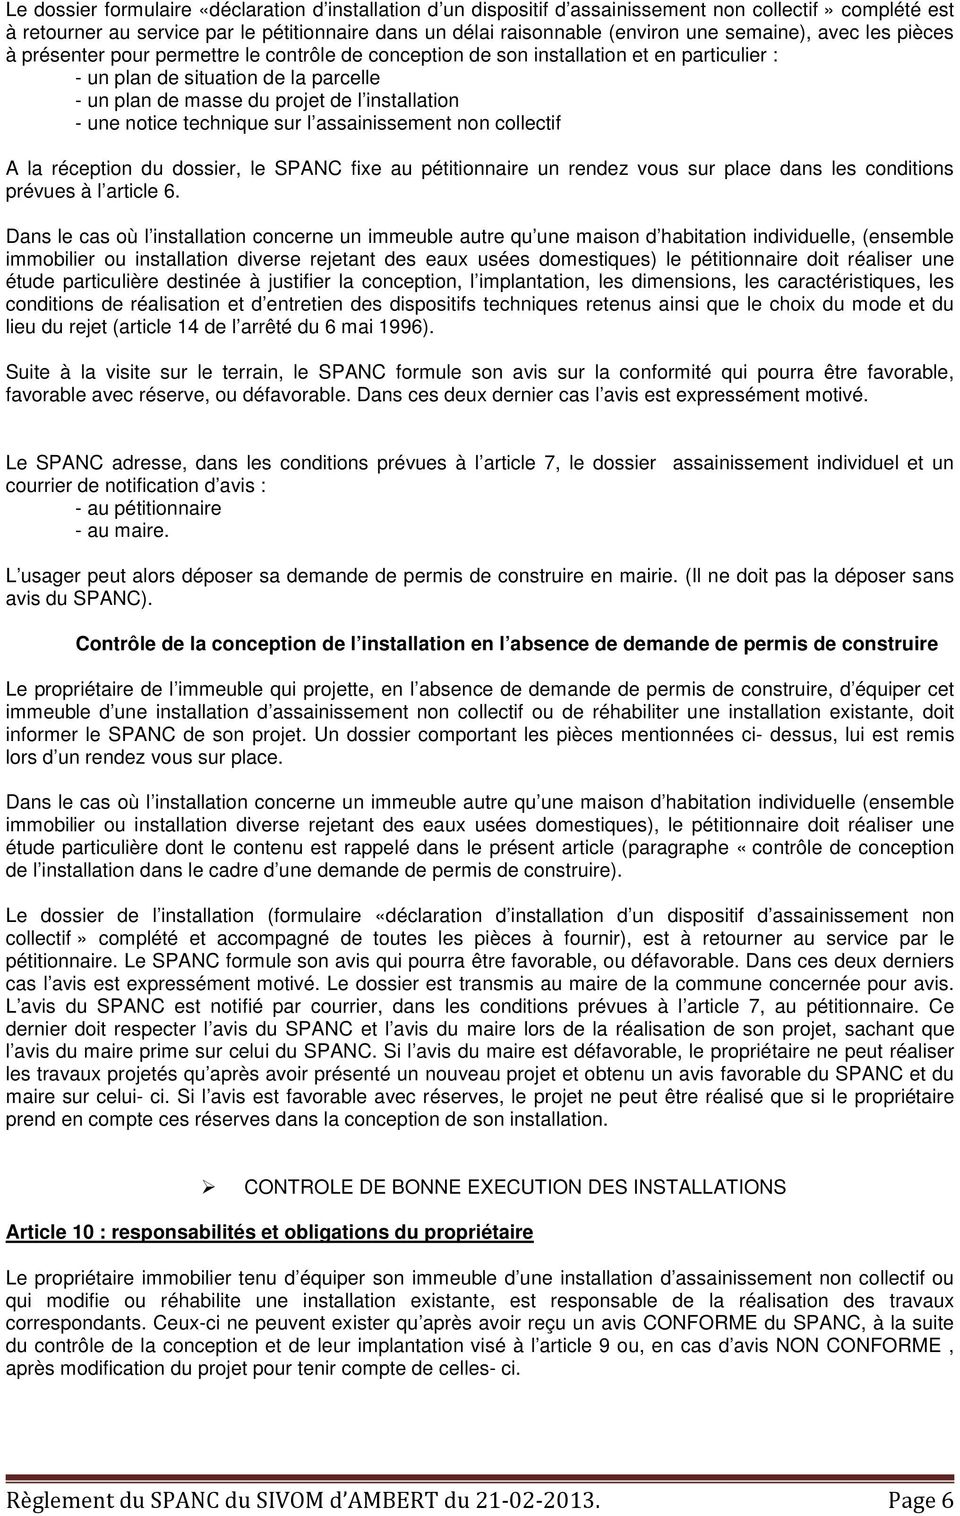 installation - une notice technique sur l assainissement non collectif A la réception du dossier, le SPANC fixe au pétitionnaire un rendez vous sur place dans les conditions prévues à l article 6.